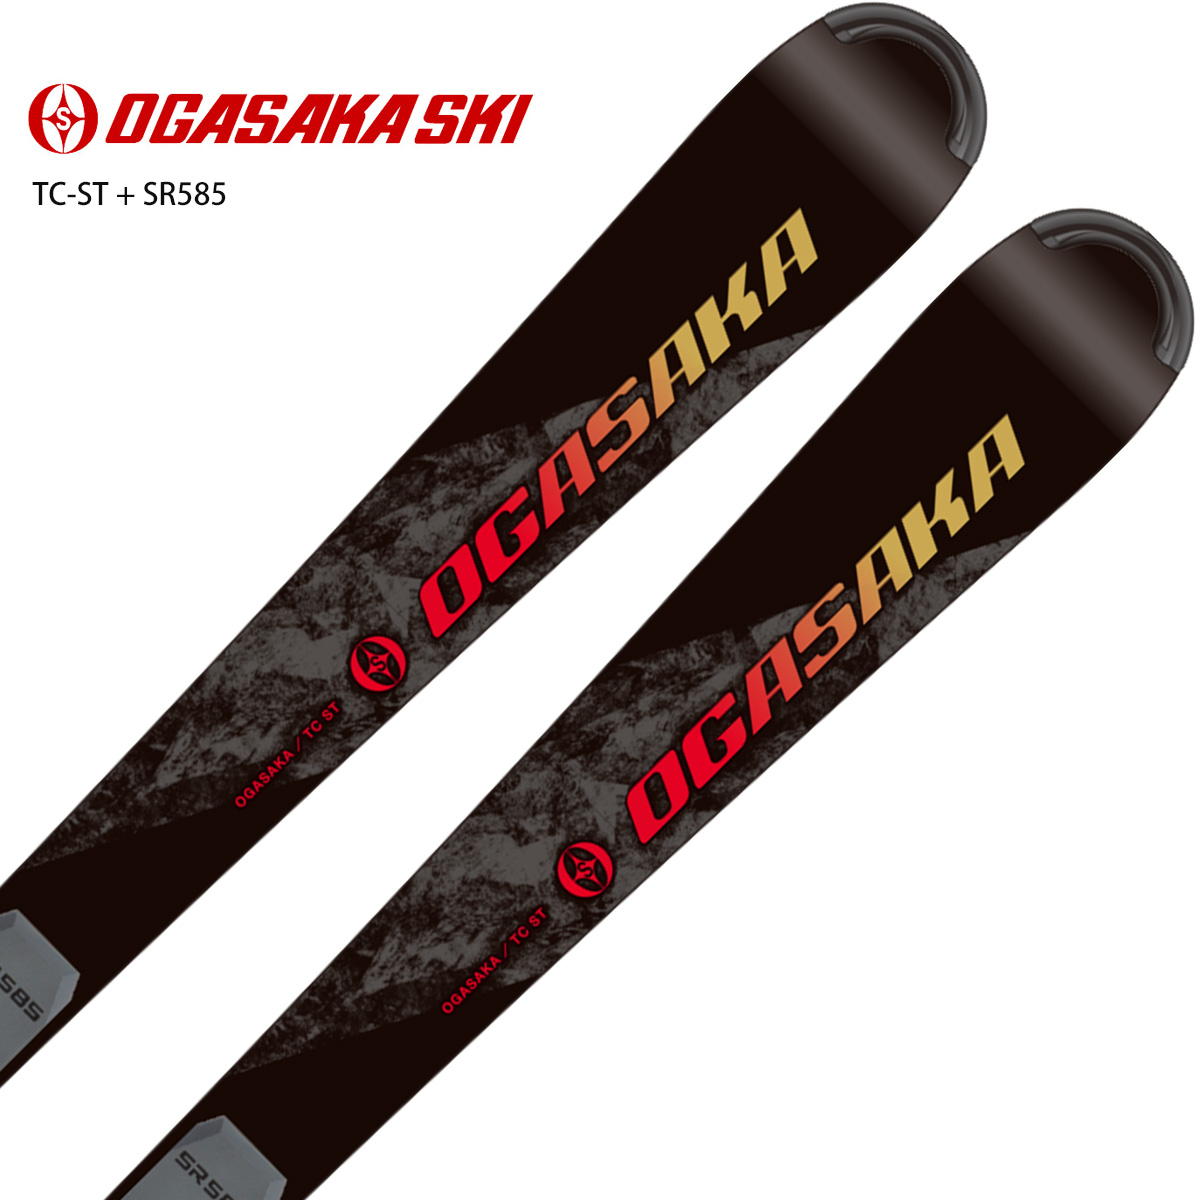 2021最新作】 OGASAKA オガサカ スキーバンド MG-1